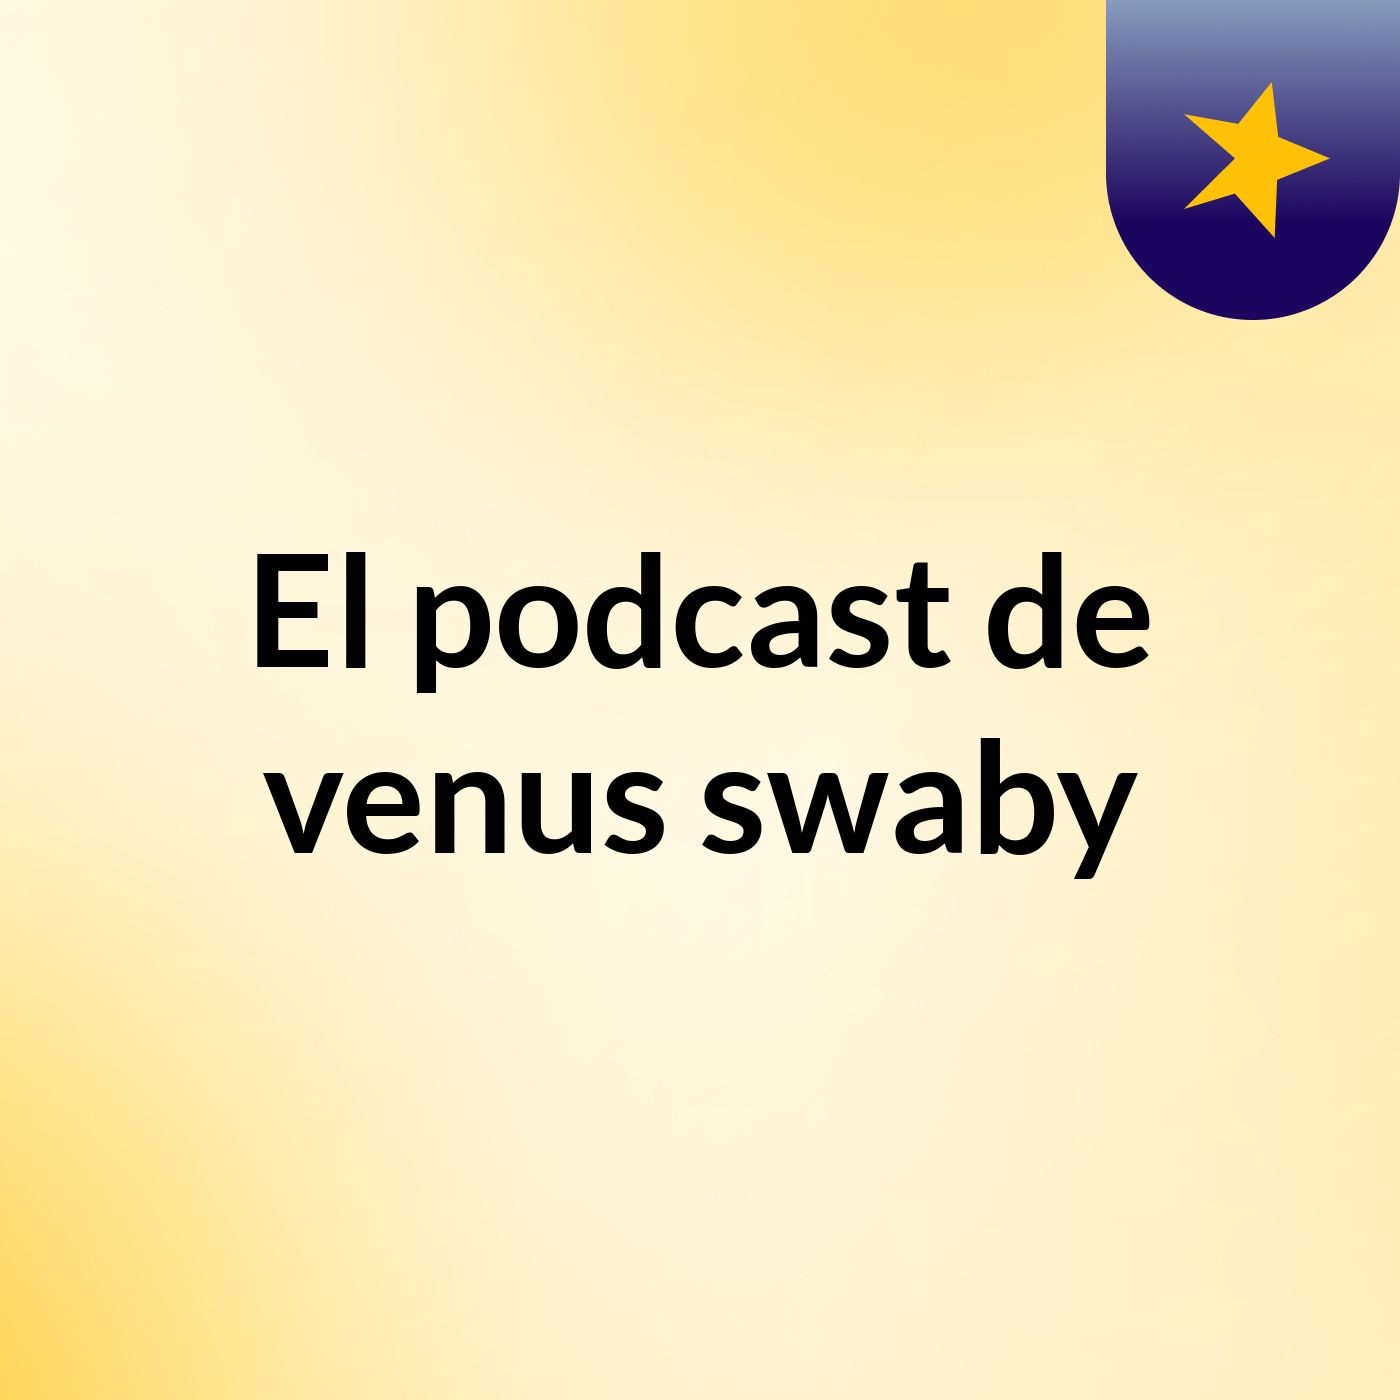 El podcast de venus swaby